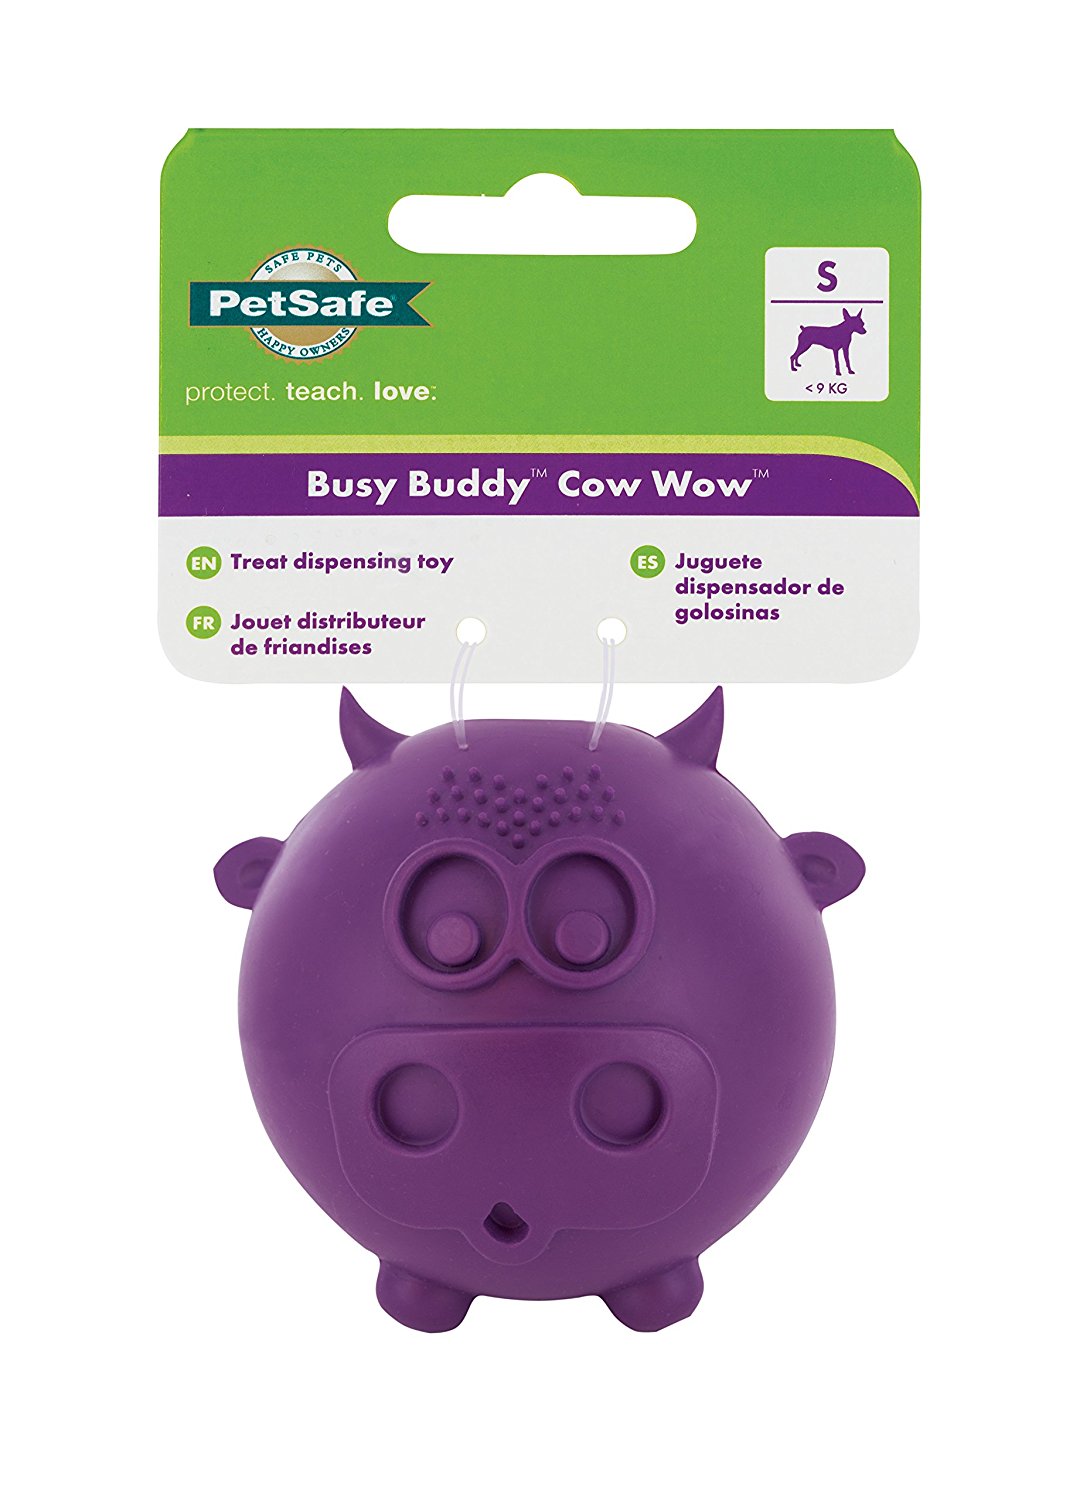 PetSafe jouets pour chien Petit Busy buddy cow wow jouet distributeur de gâteries